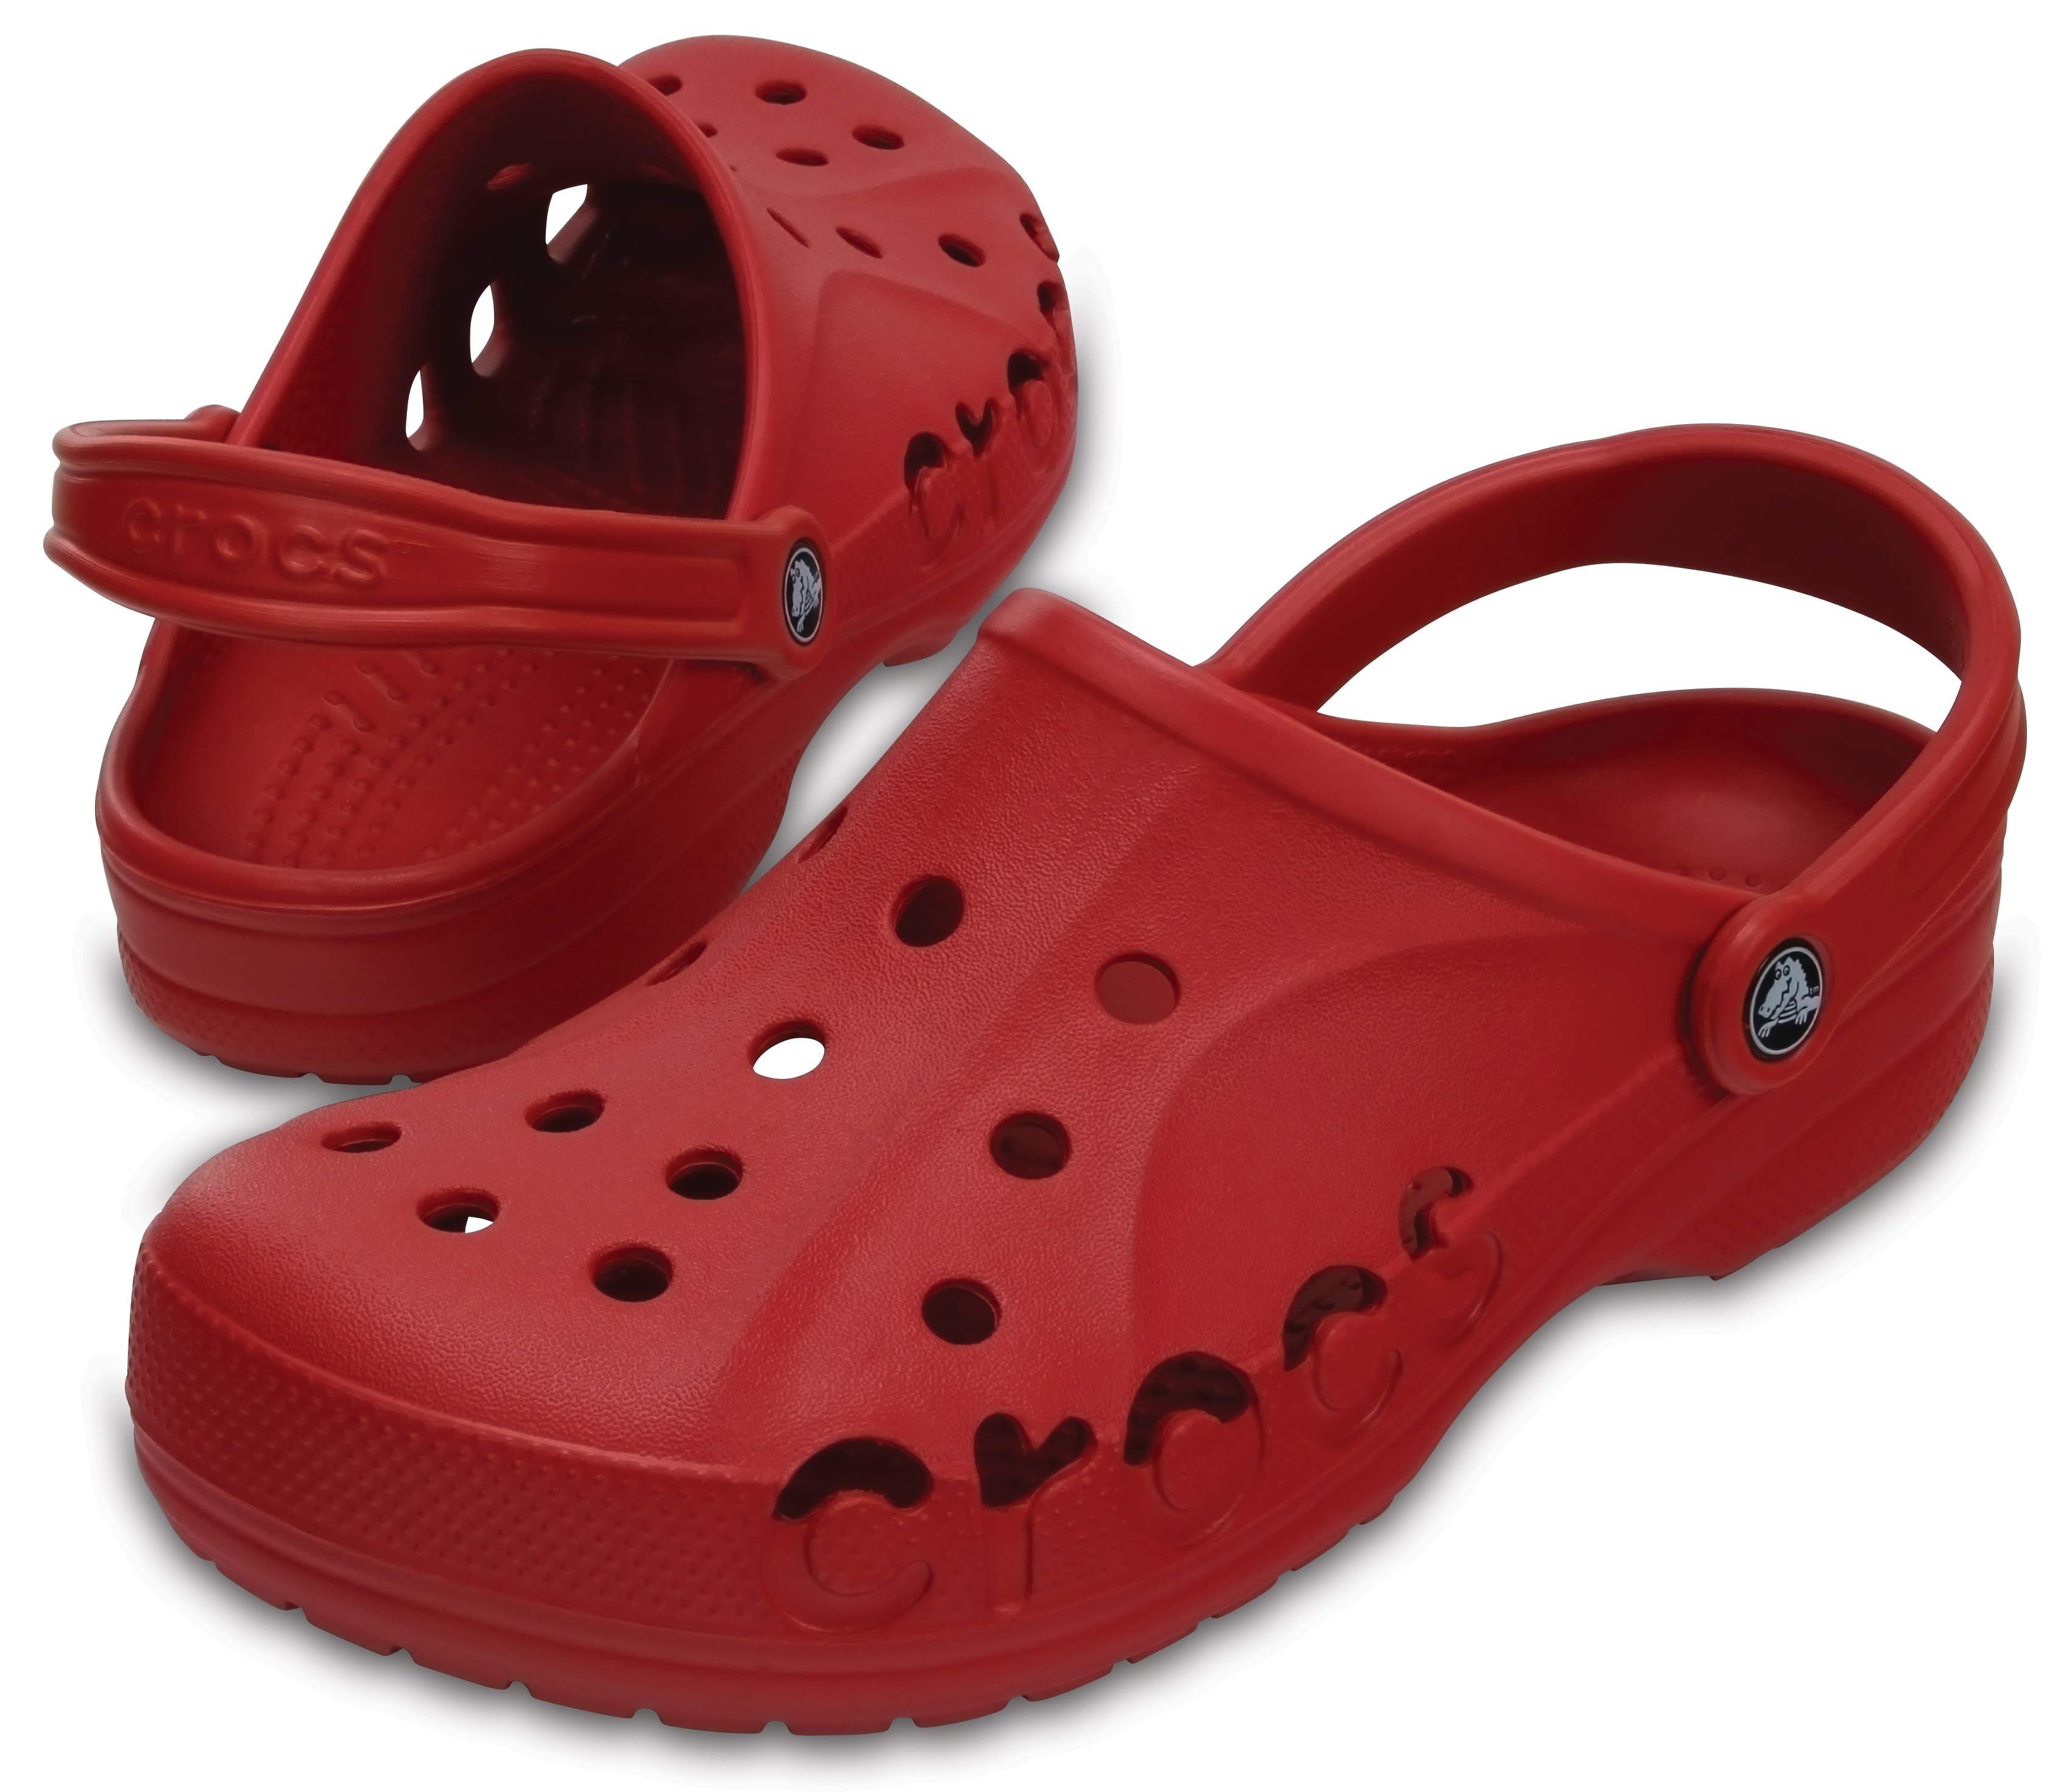 Crocs Womens Baya Lightweight Casual Summer Shoes Sandals Strap Clogg